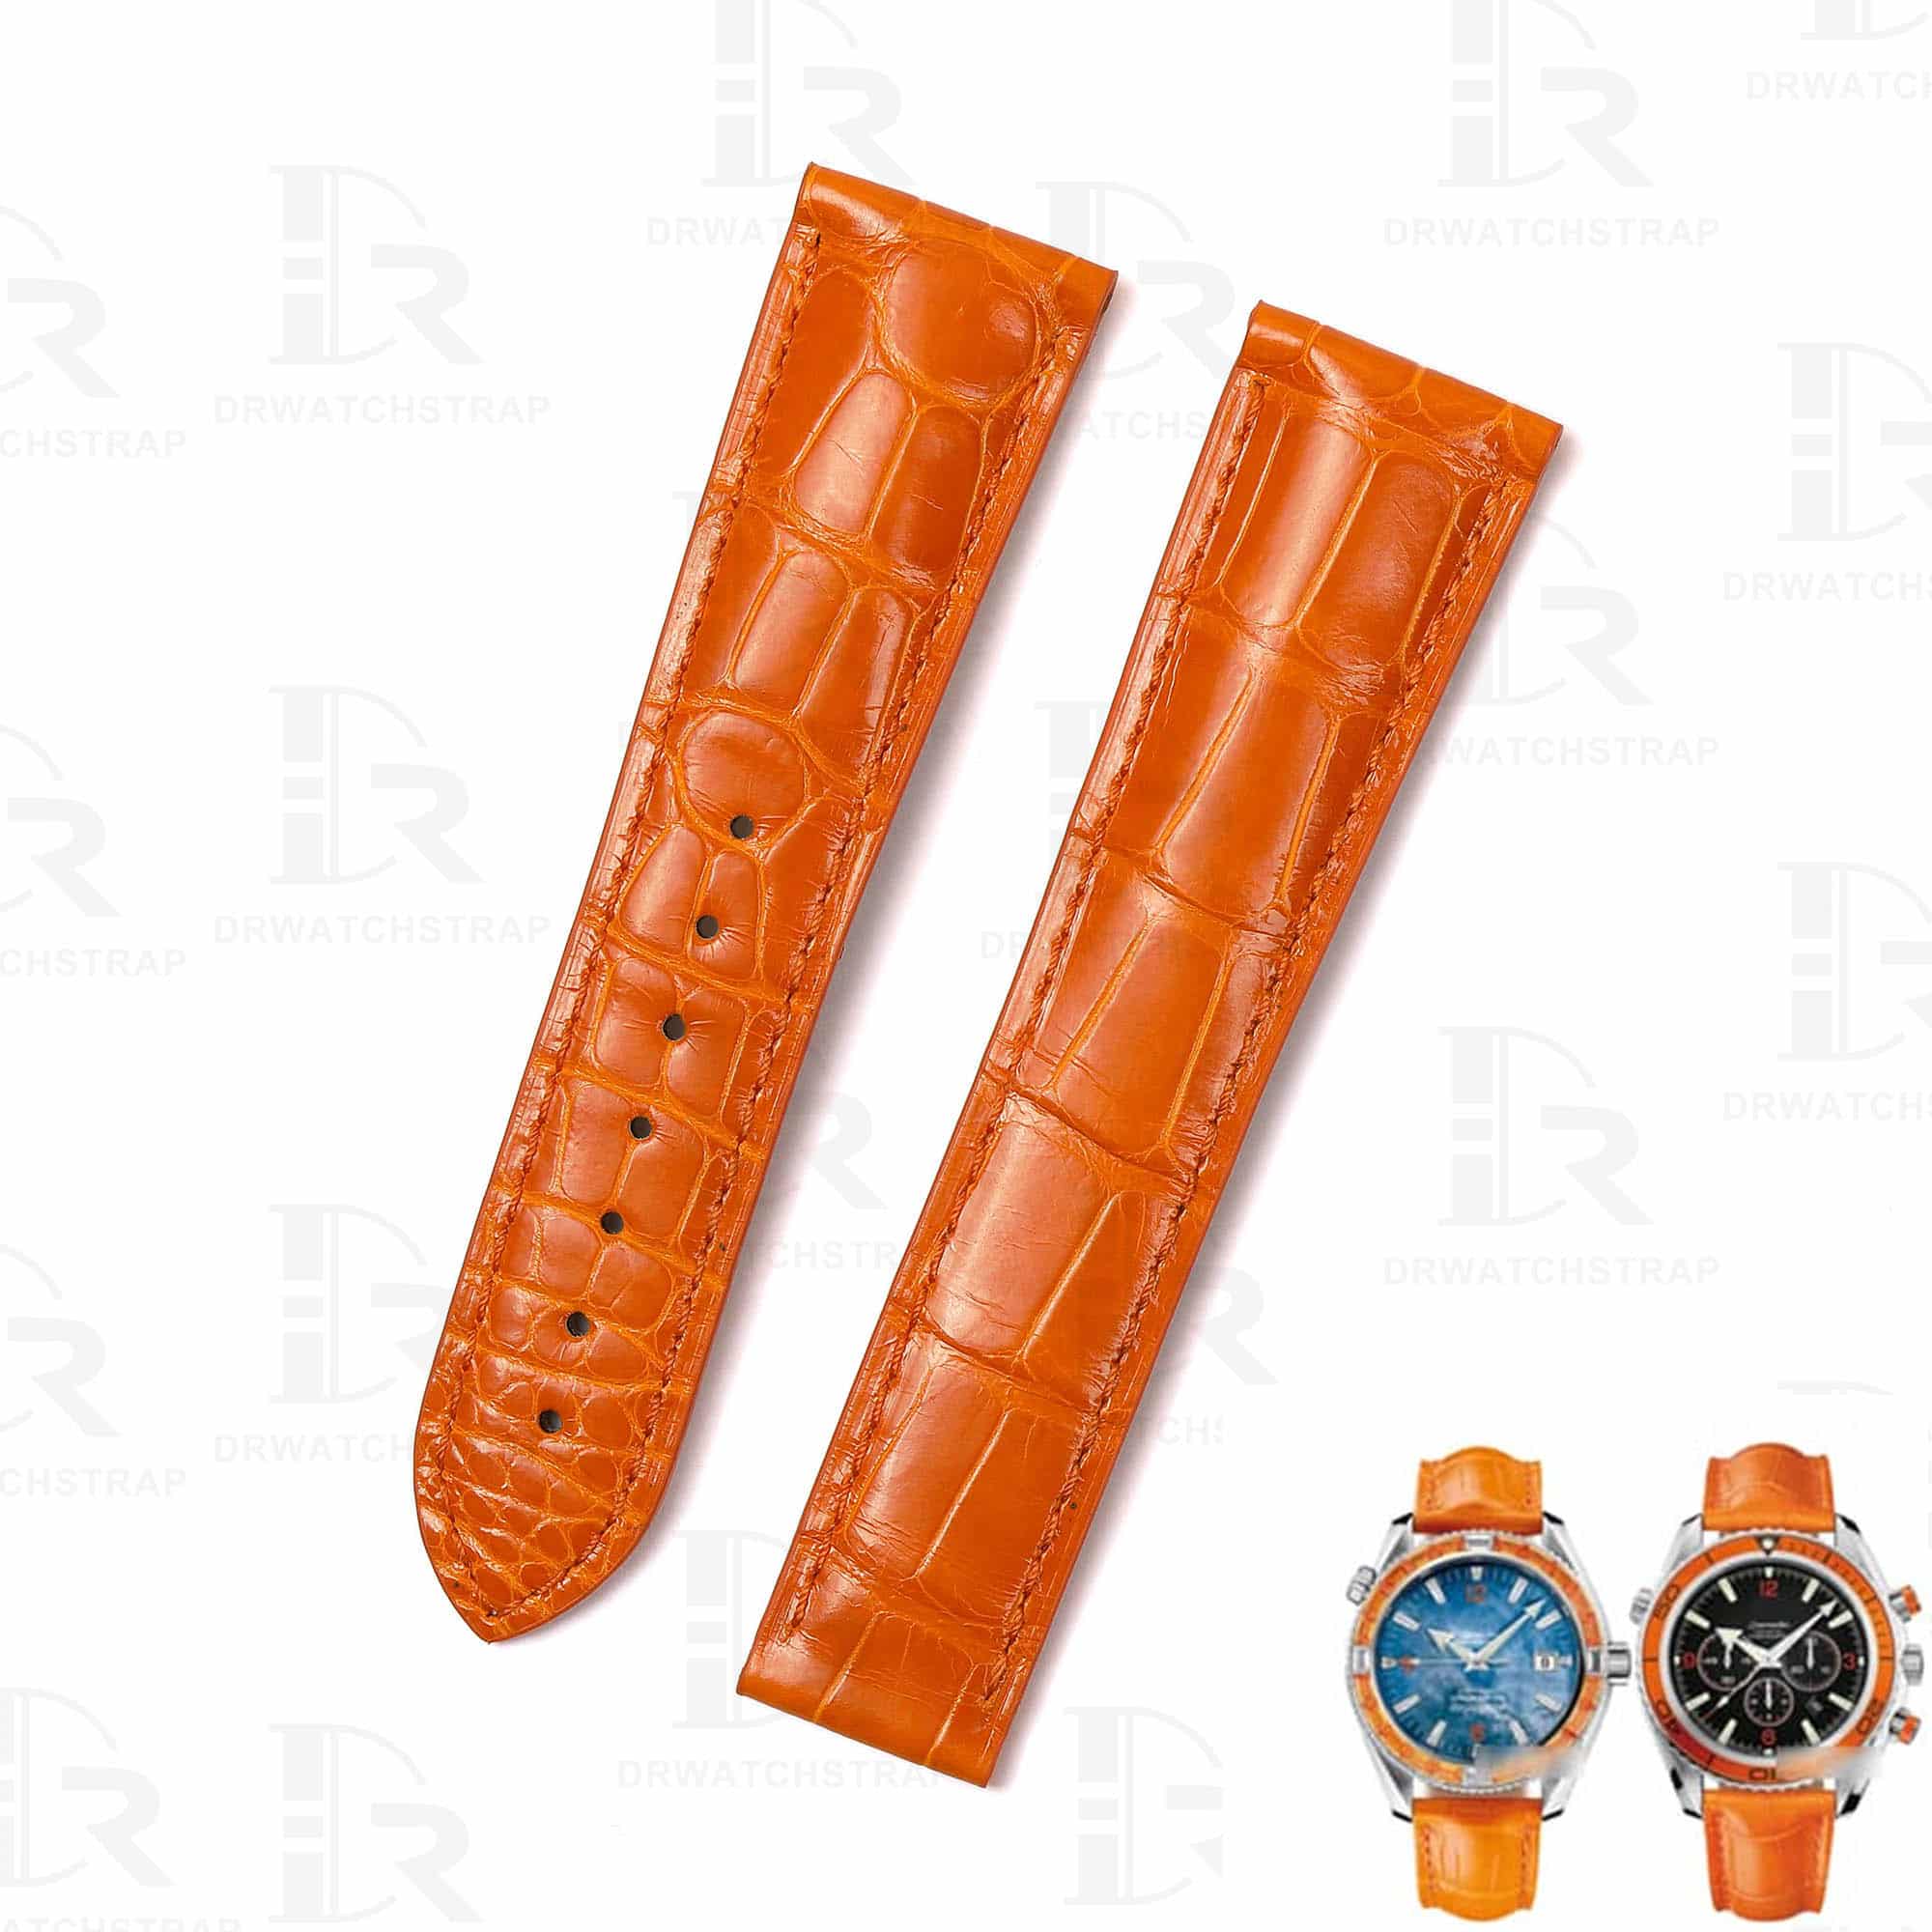 Genuine orange alligator leather watch strap